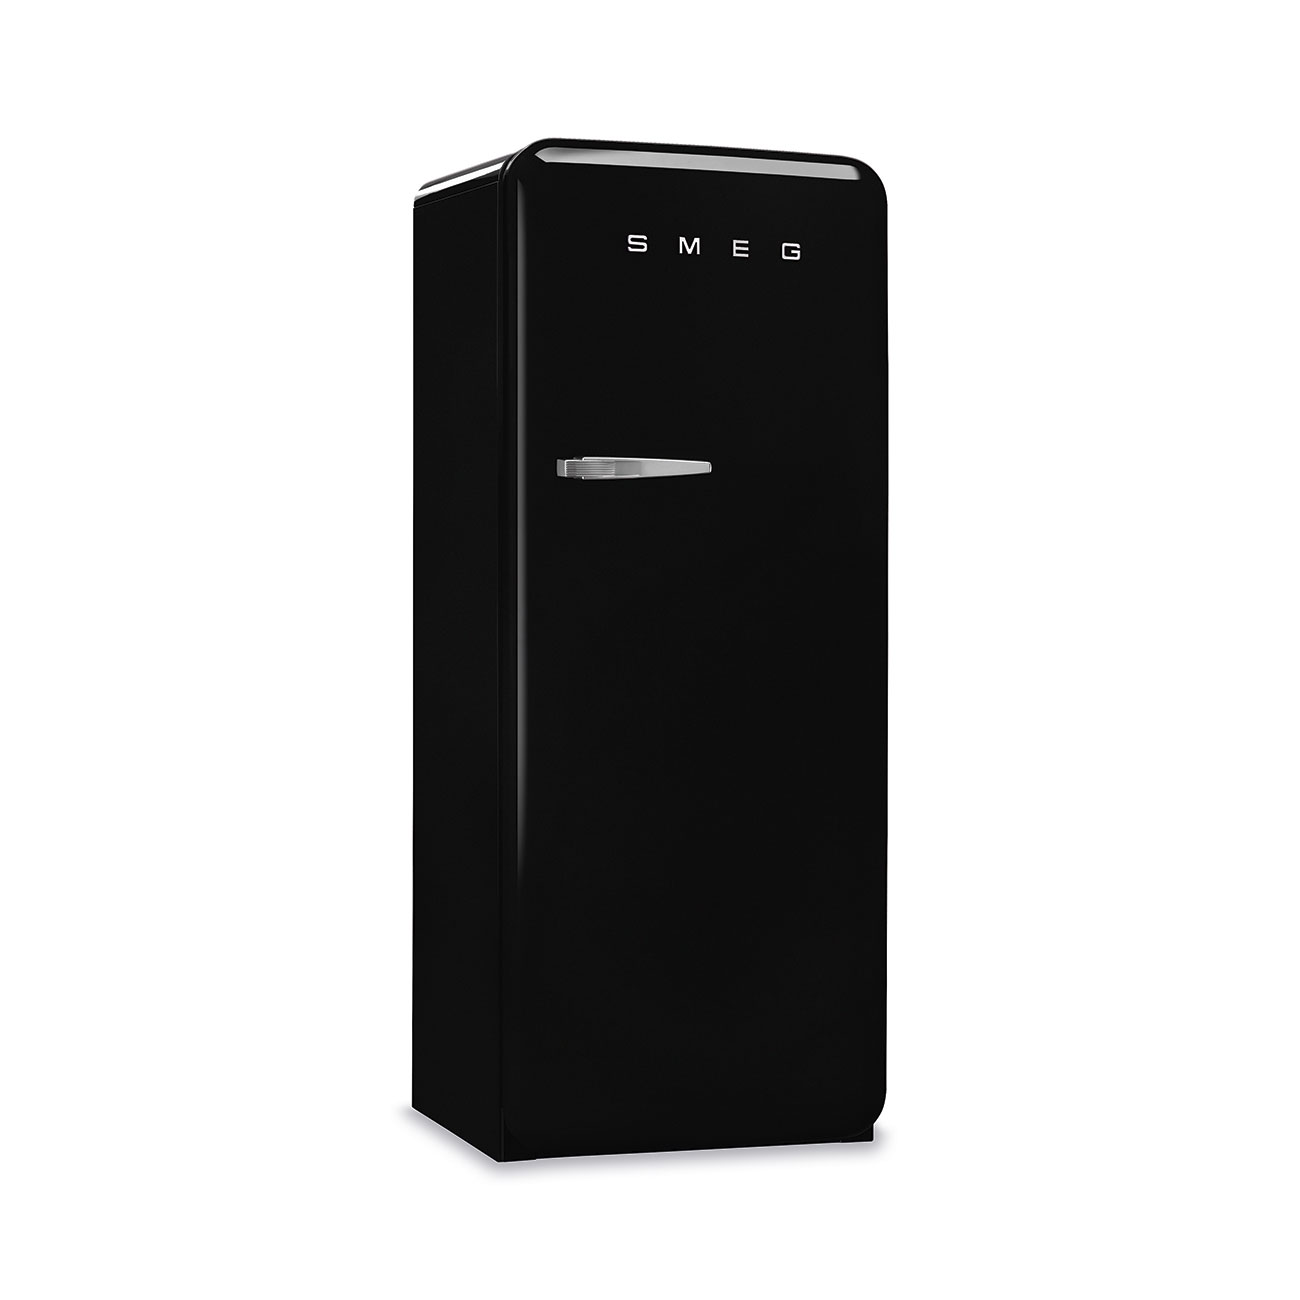 Schwarz Retro-Kühlschränke von Smeg_3